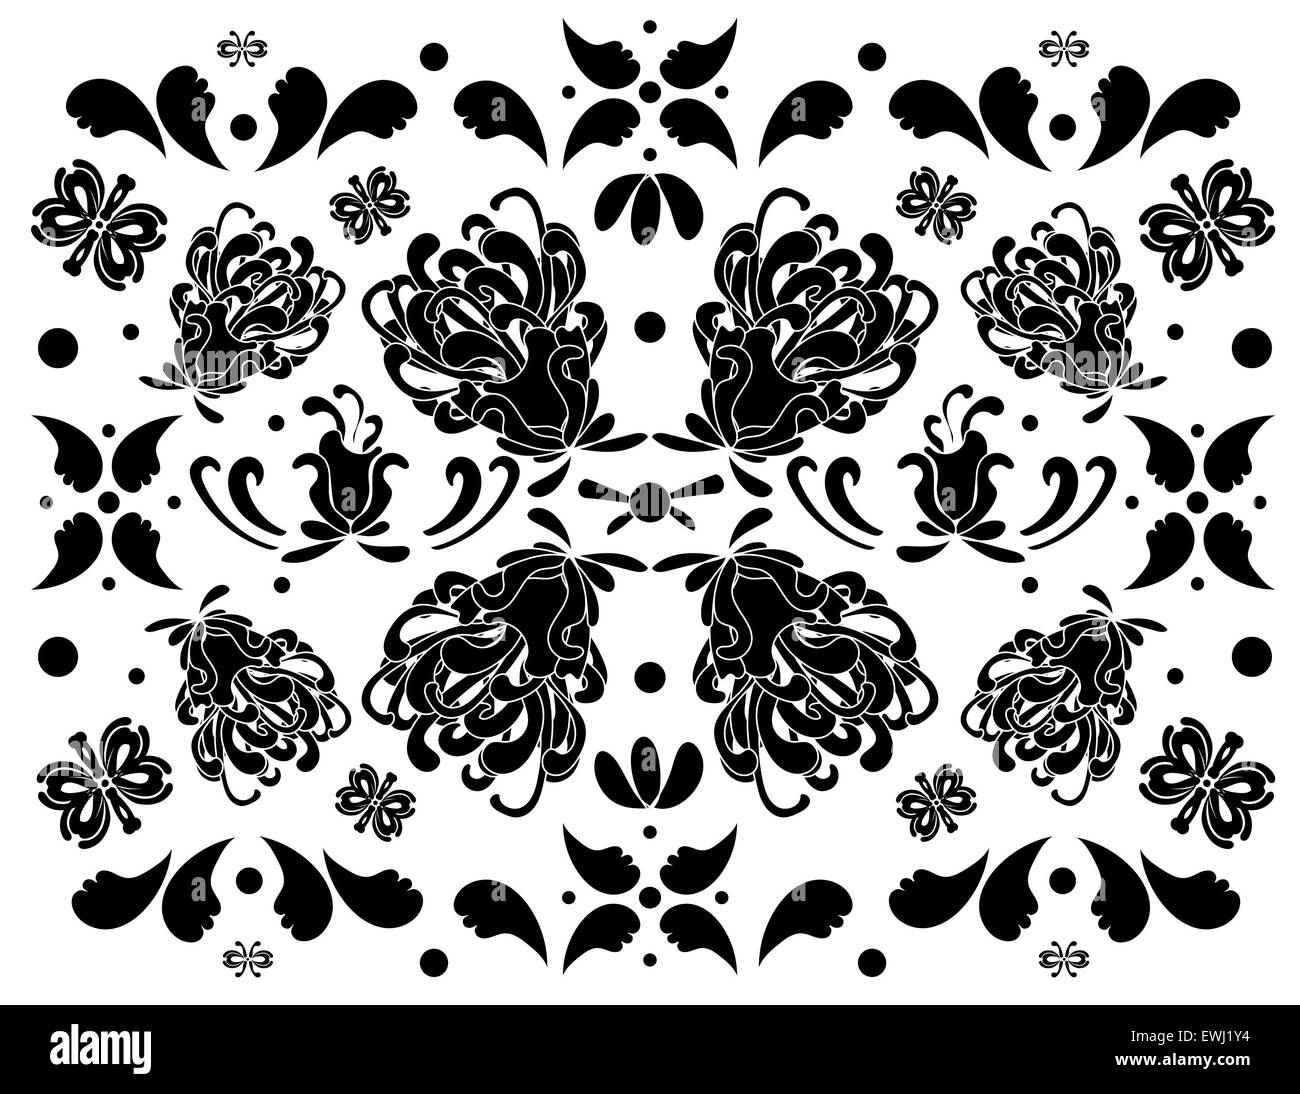 Classico e originale composizione in bianco e nero per decorare tutti i tuoi spazi con iris fiore Foto Stock